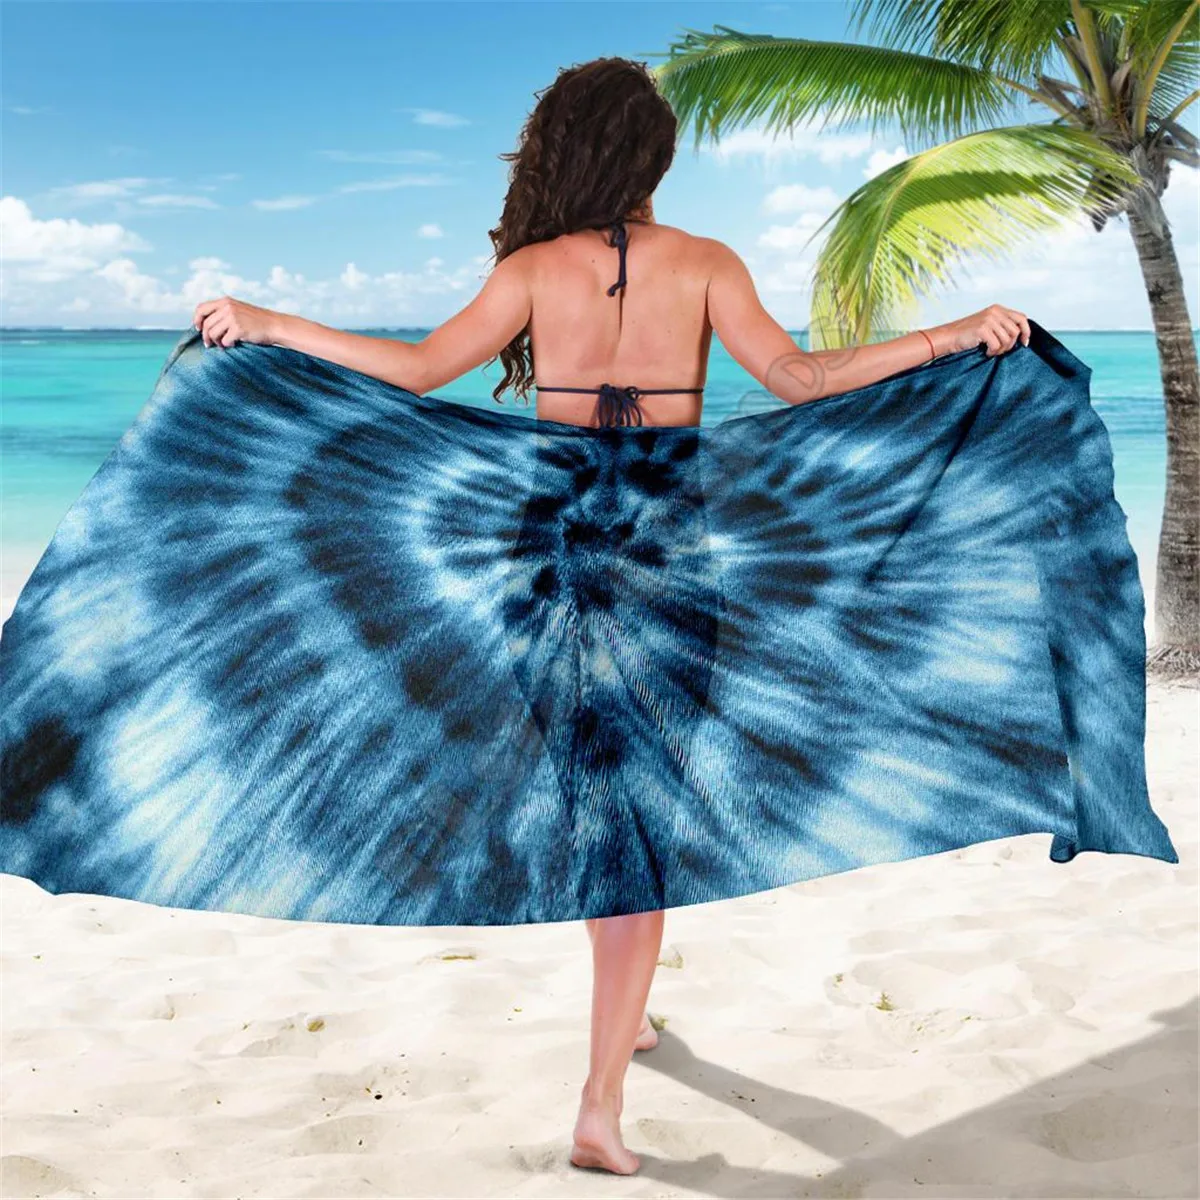 

Blue Tie Dye Sarong 3D printed Towel Summer Seaside resort Casual Bohemian style Beach Towel